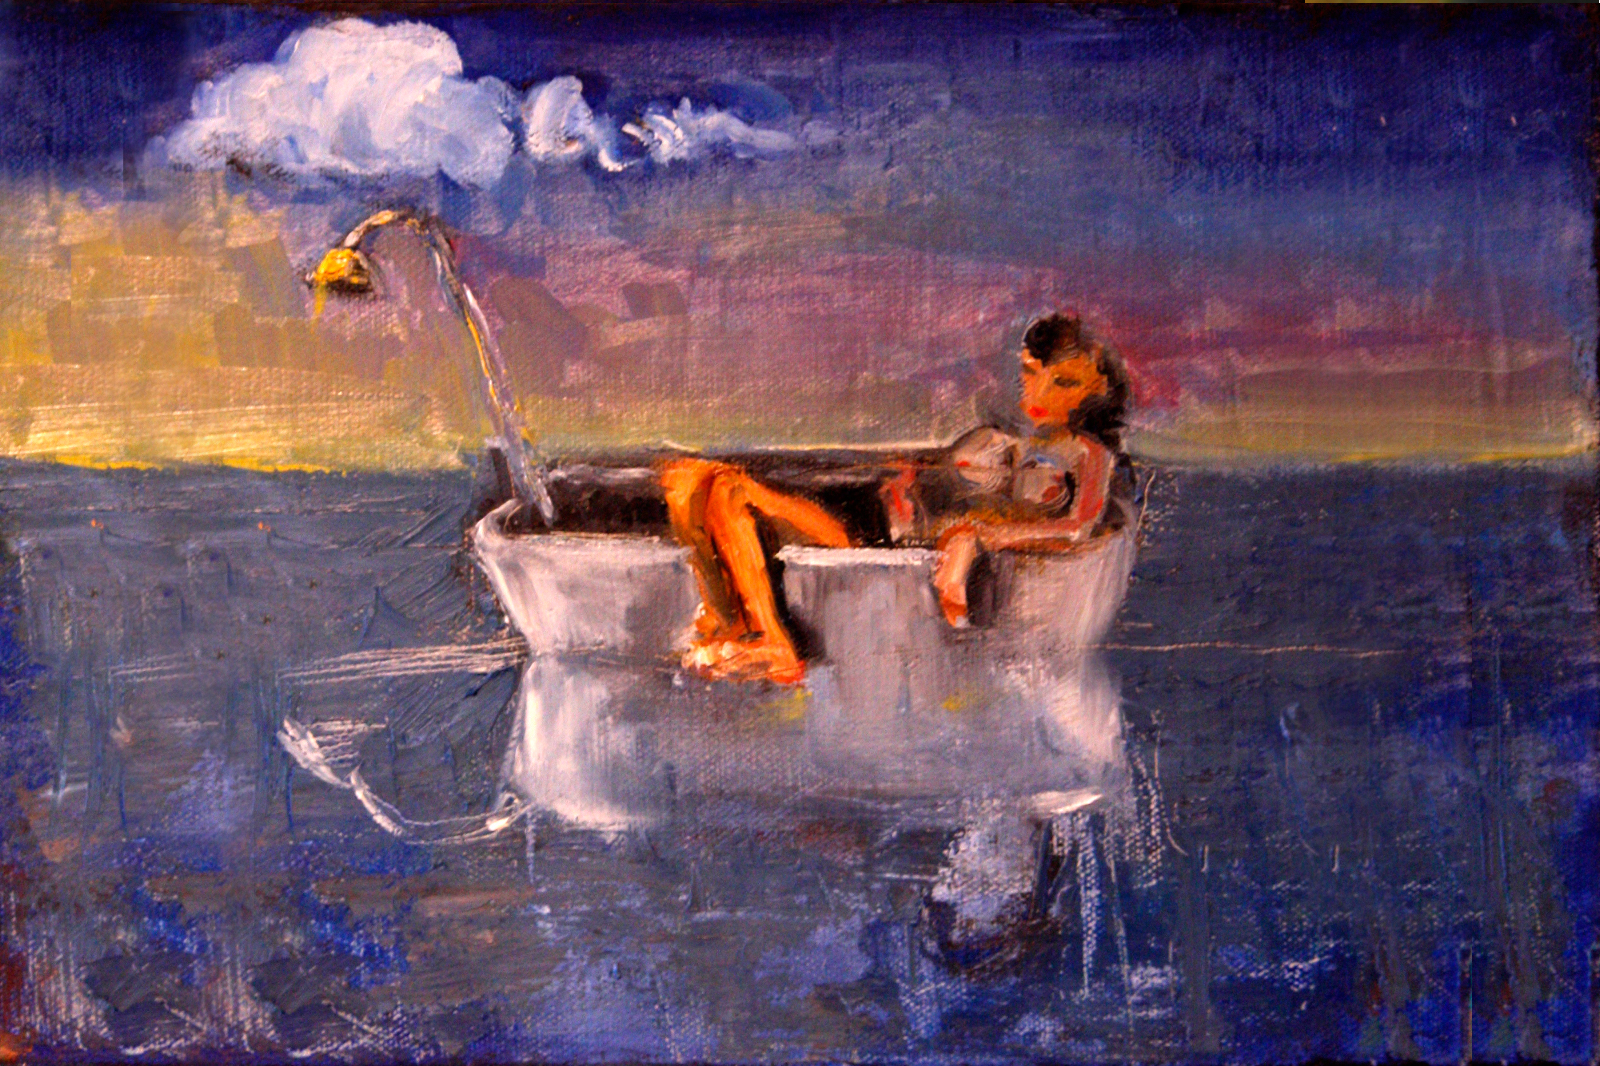 oil painting "woman in bathtub" by Robert Schmolze